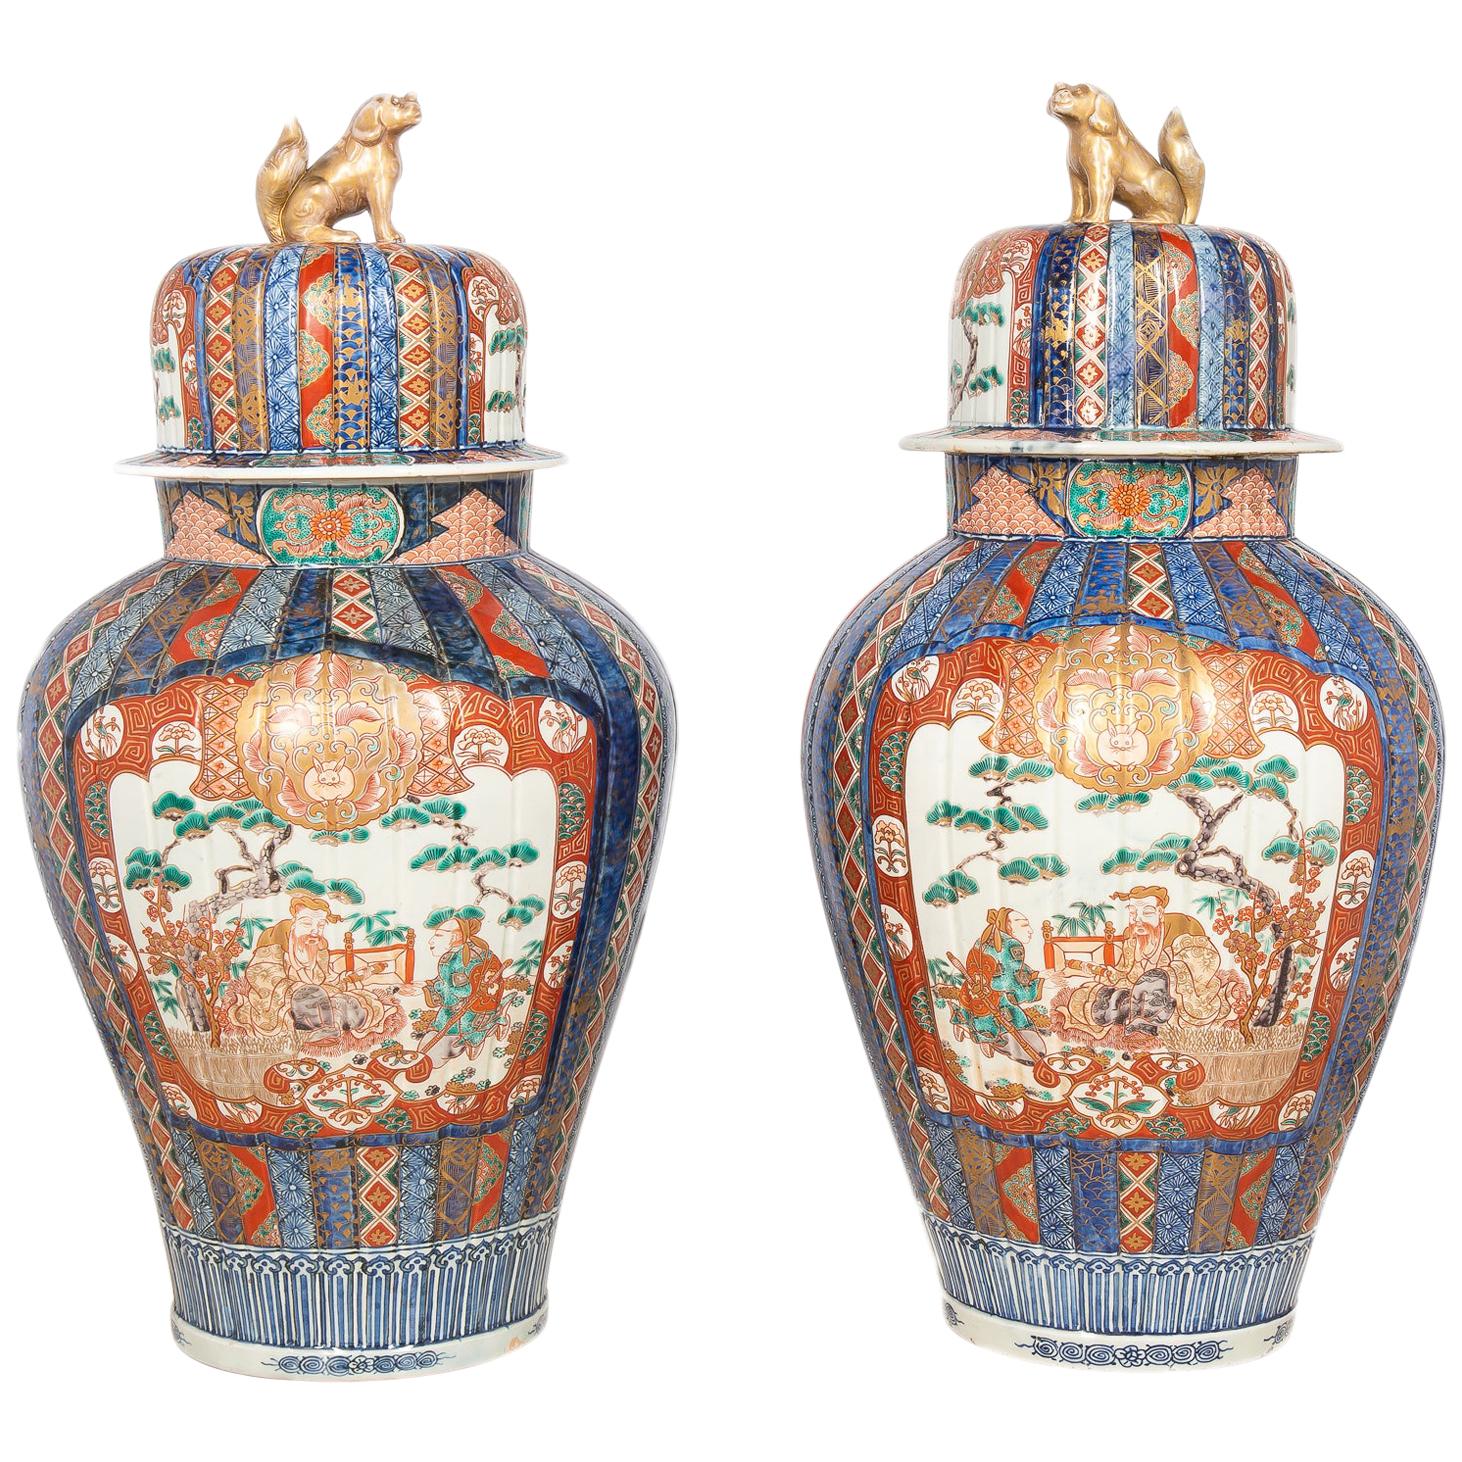 Large Pair of 19th Century Imari Vases